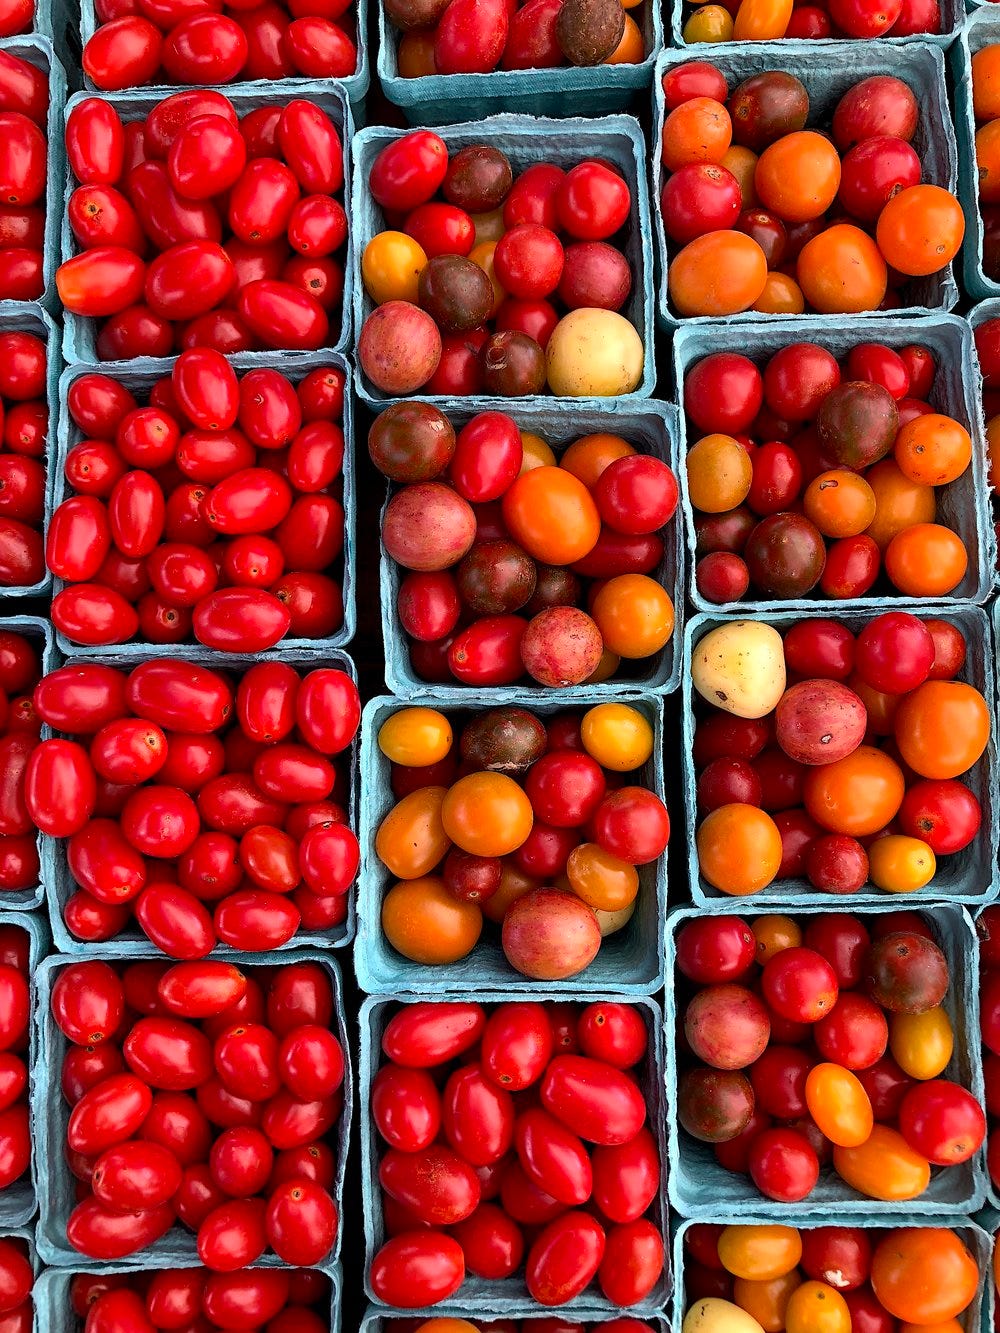 Tomatoes (Cherry).jpg